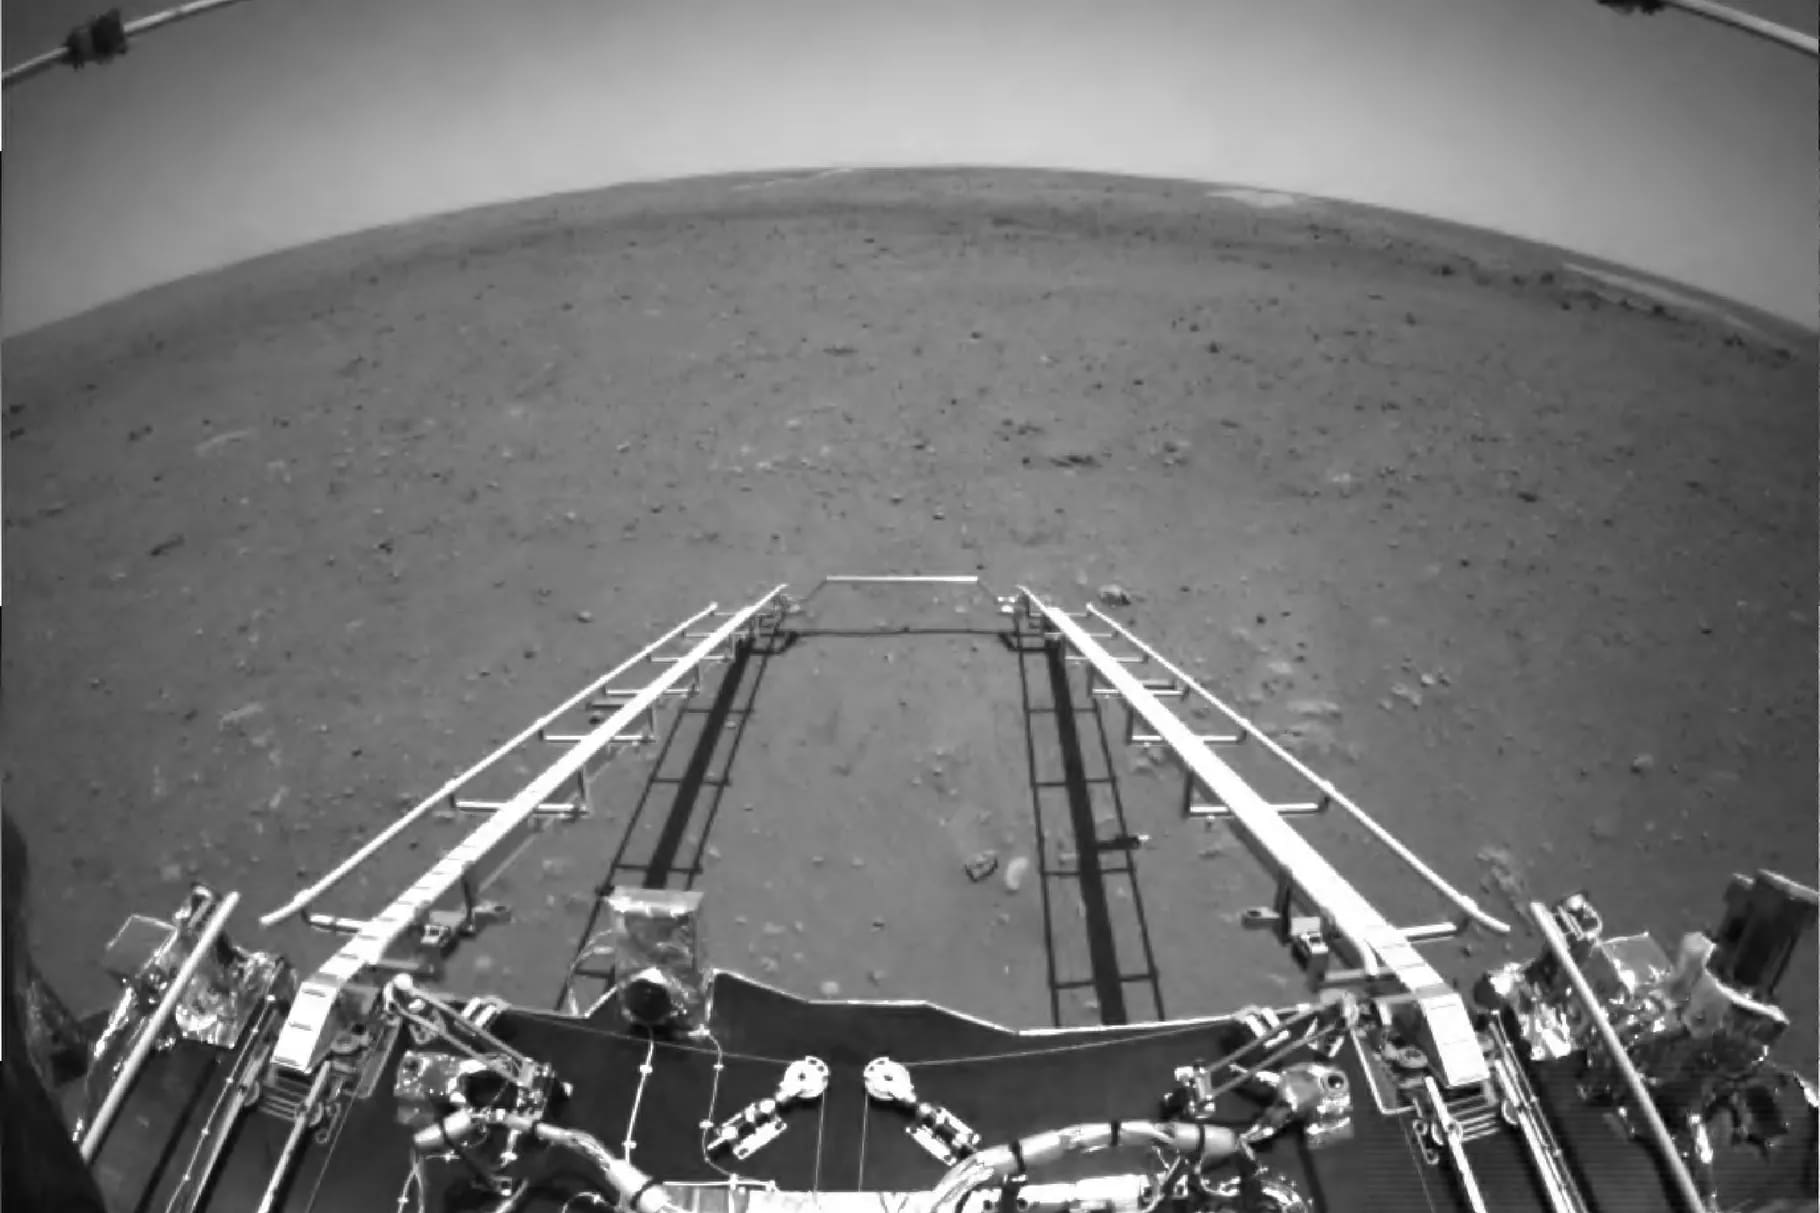 Китайский марсоход Zhurong прислал первые фотографии с Марса